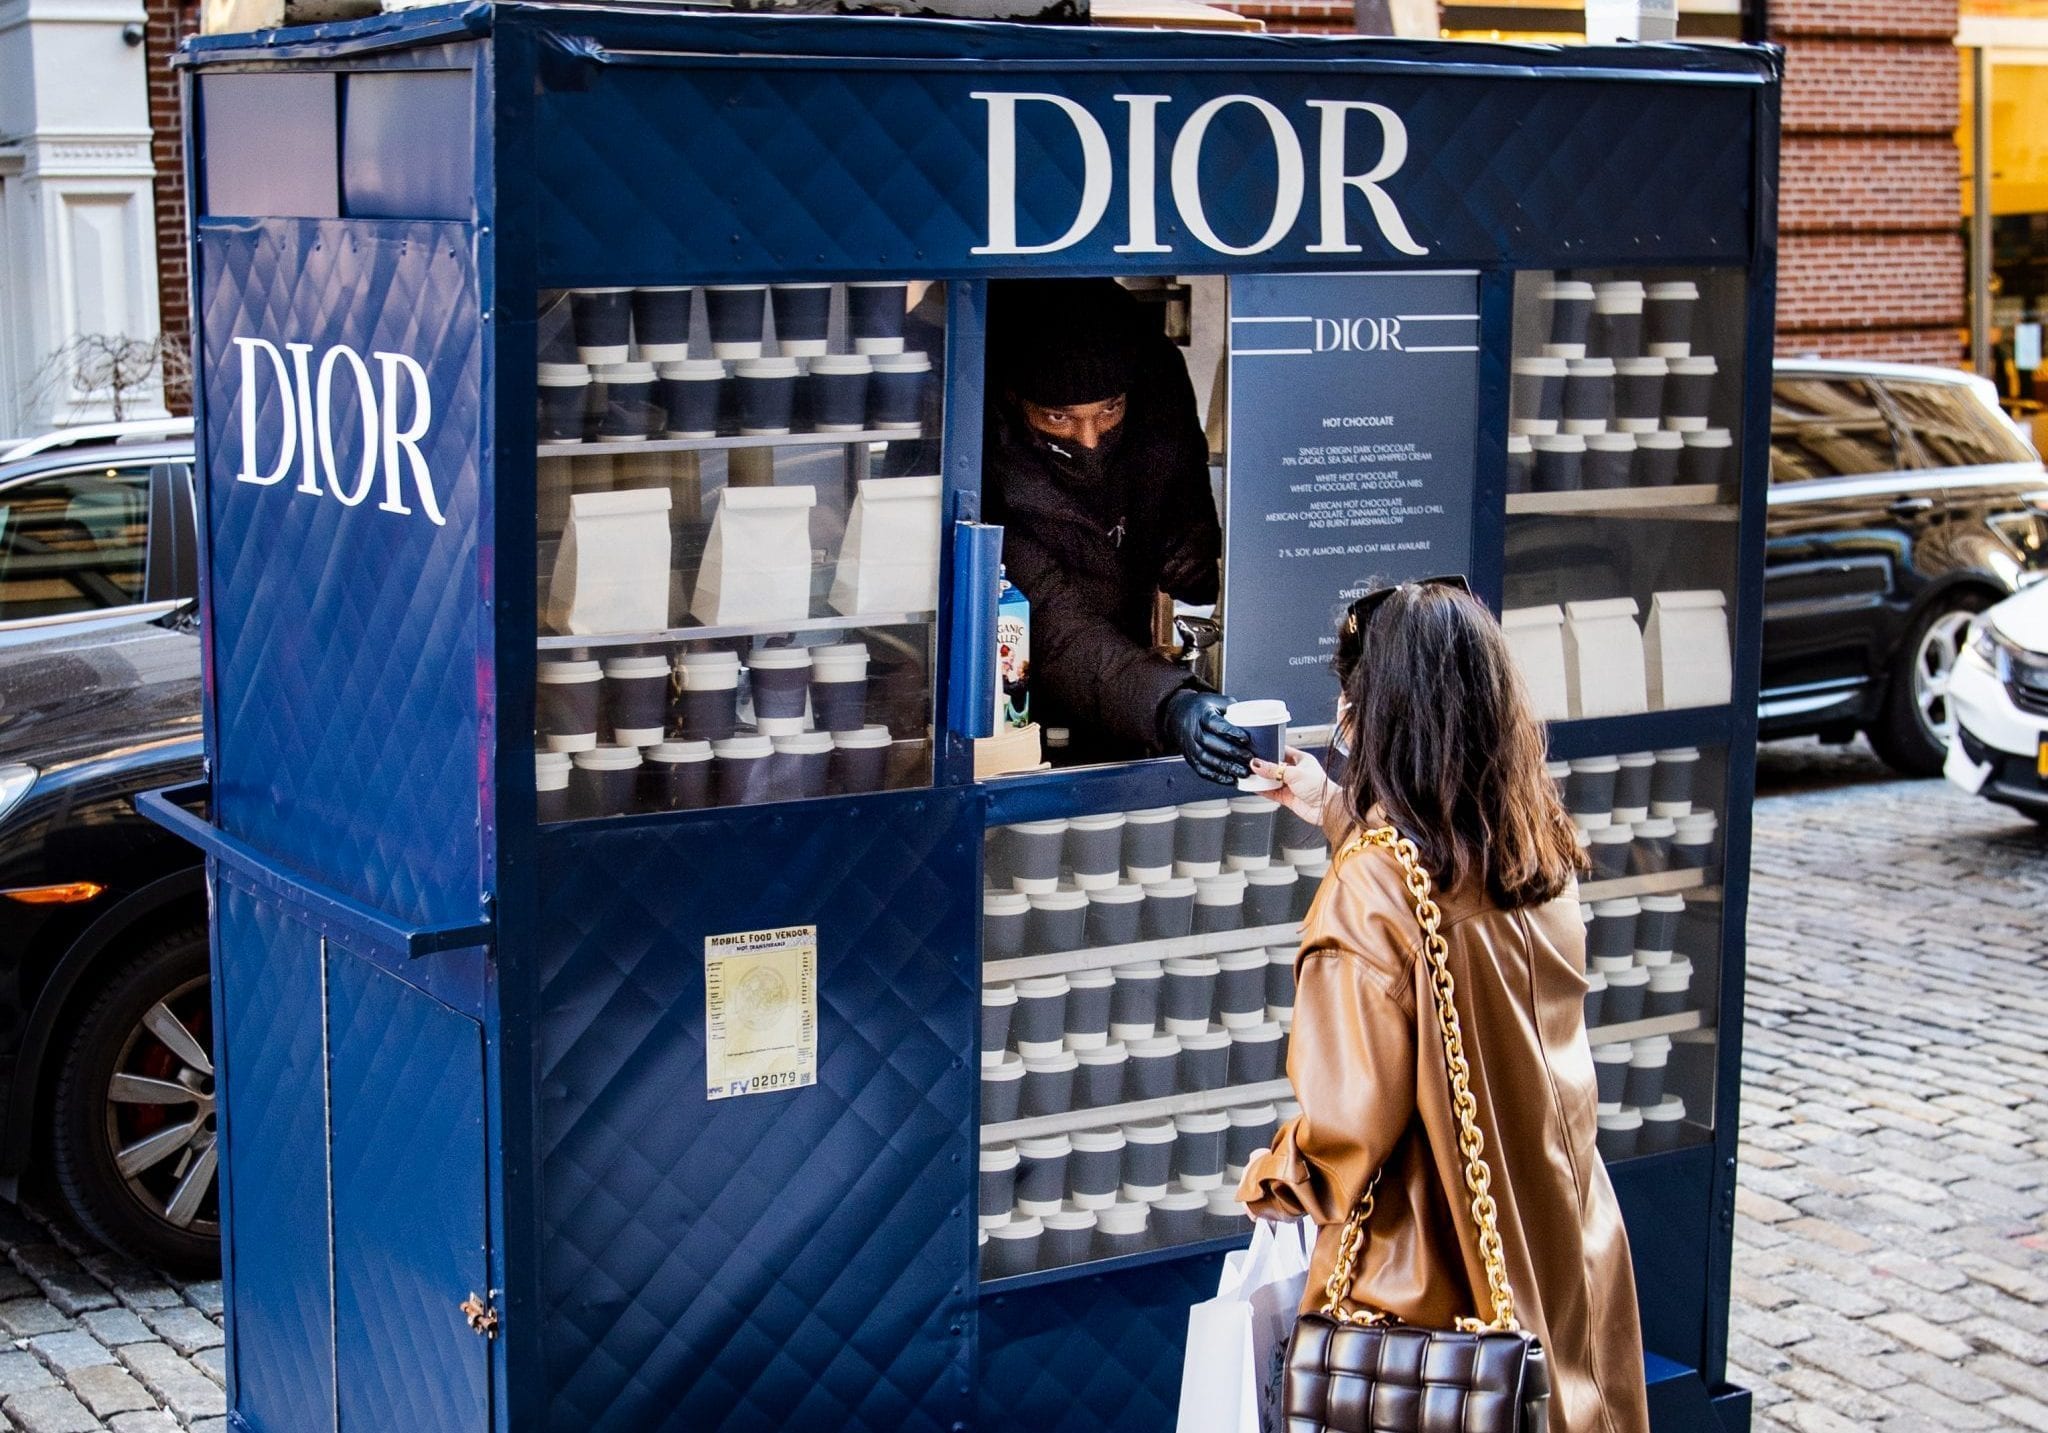 Dior mobile pop-up shop